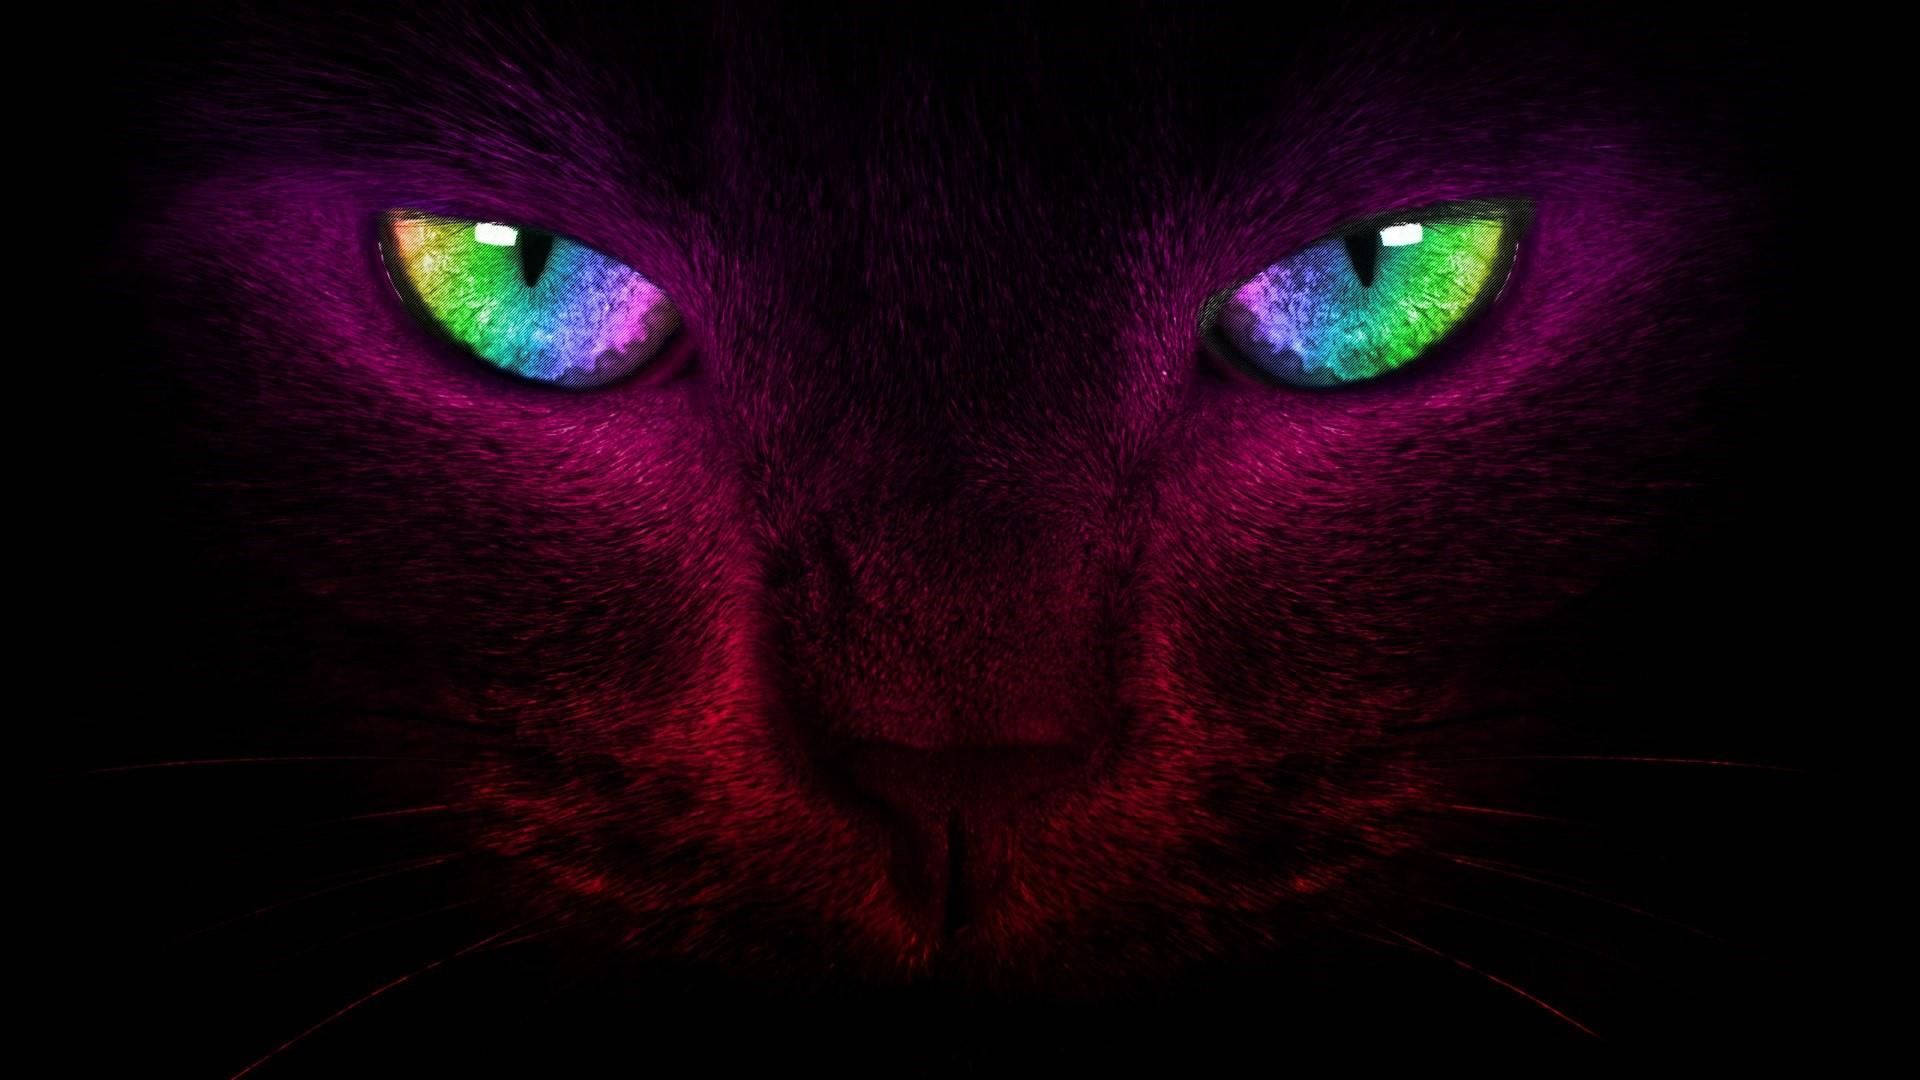   Cats  Animals Background Wallpapers on Desktop Nexus Image 2551222